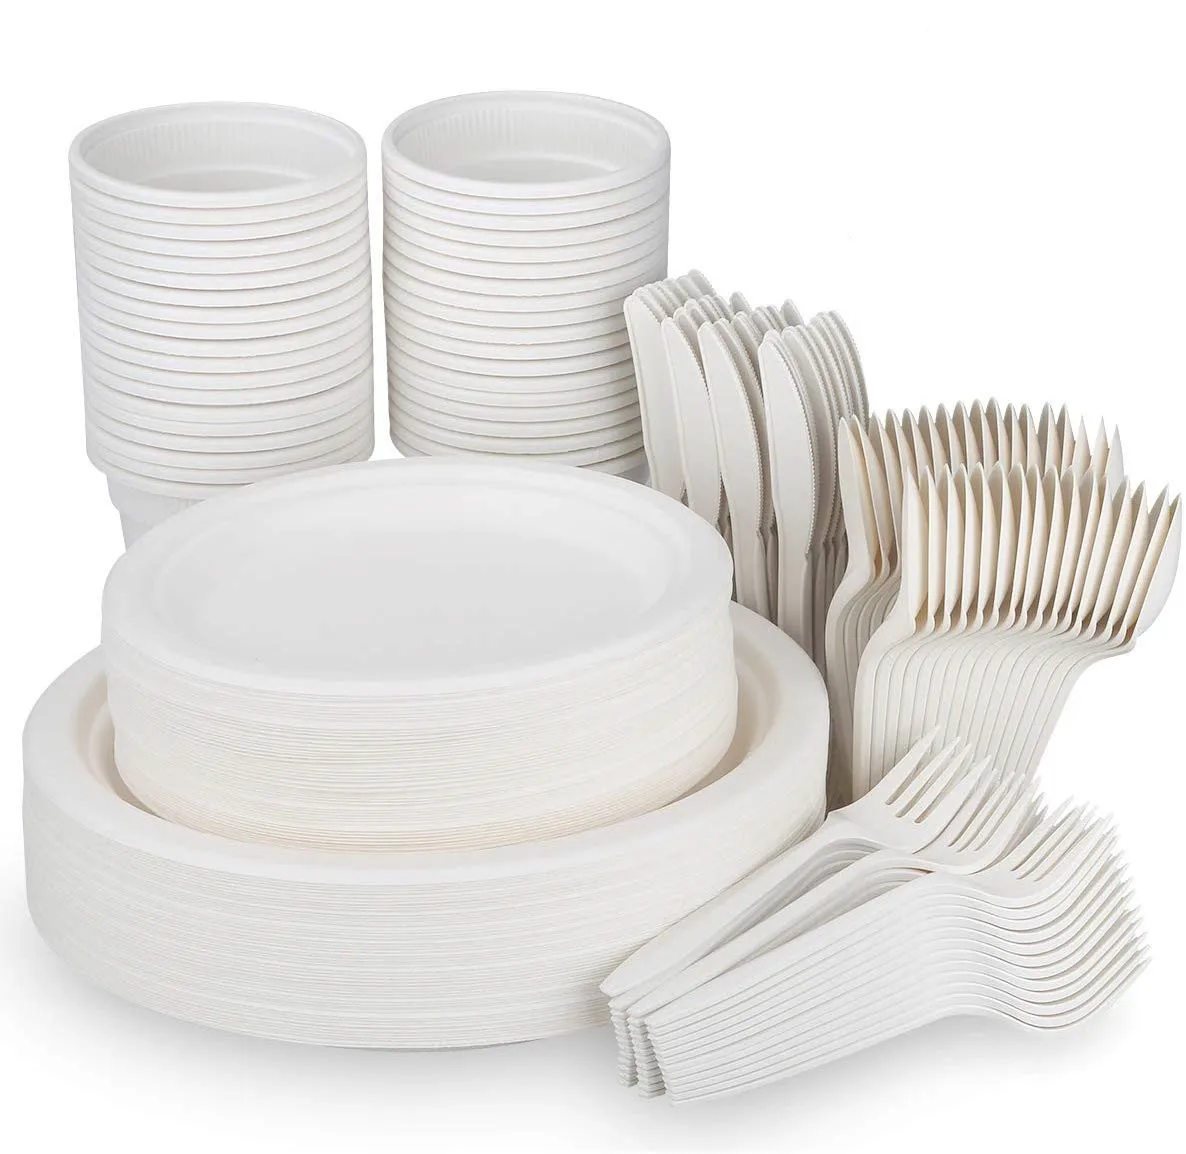 Купить одноразовую посуду пластиковую. Одноразовая посуда. Посуда одноразовая пластиковая. Разовая посуда. Набор одноразовой посуды.